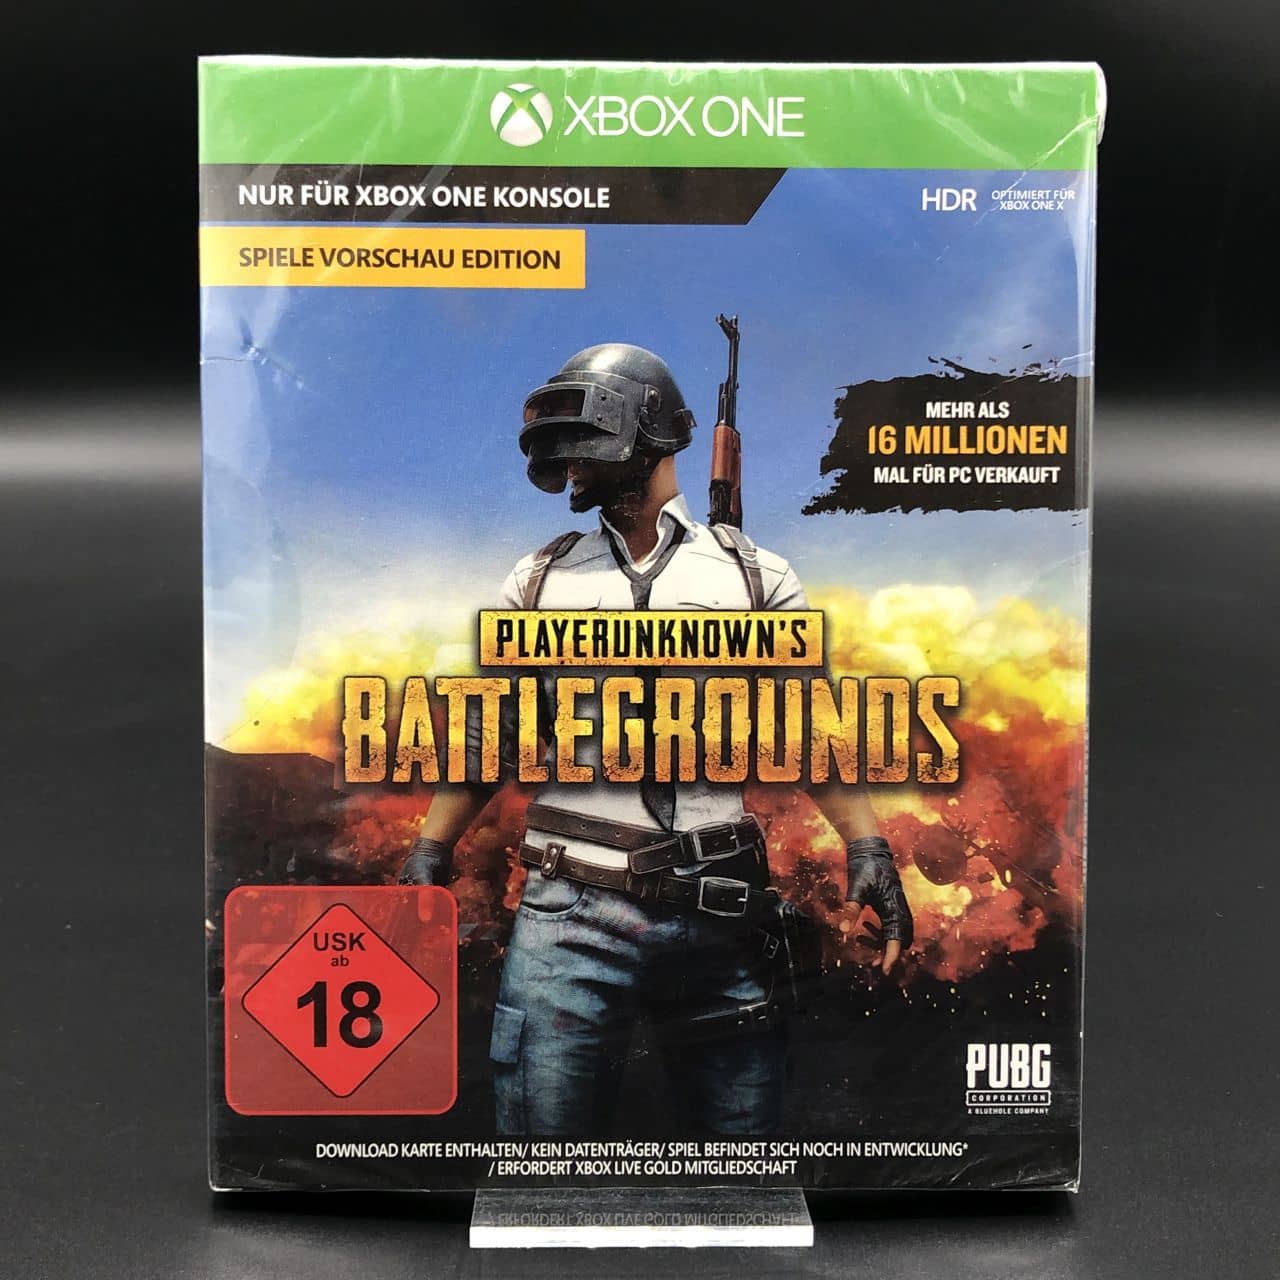 PlayerUnknown's Battlegrounds (NEU) (Download Karte - kein Datenträger) Xbox One (FSK18)